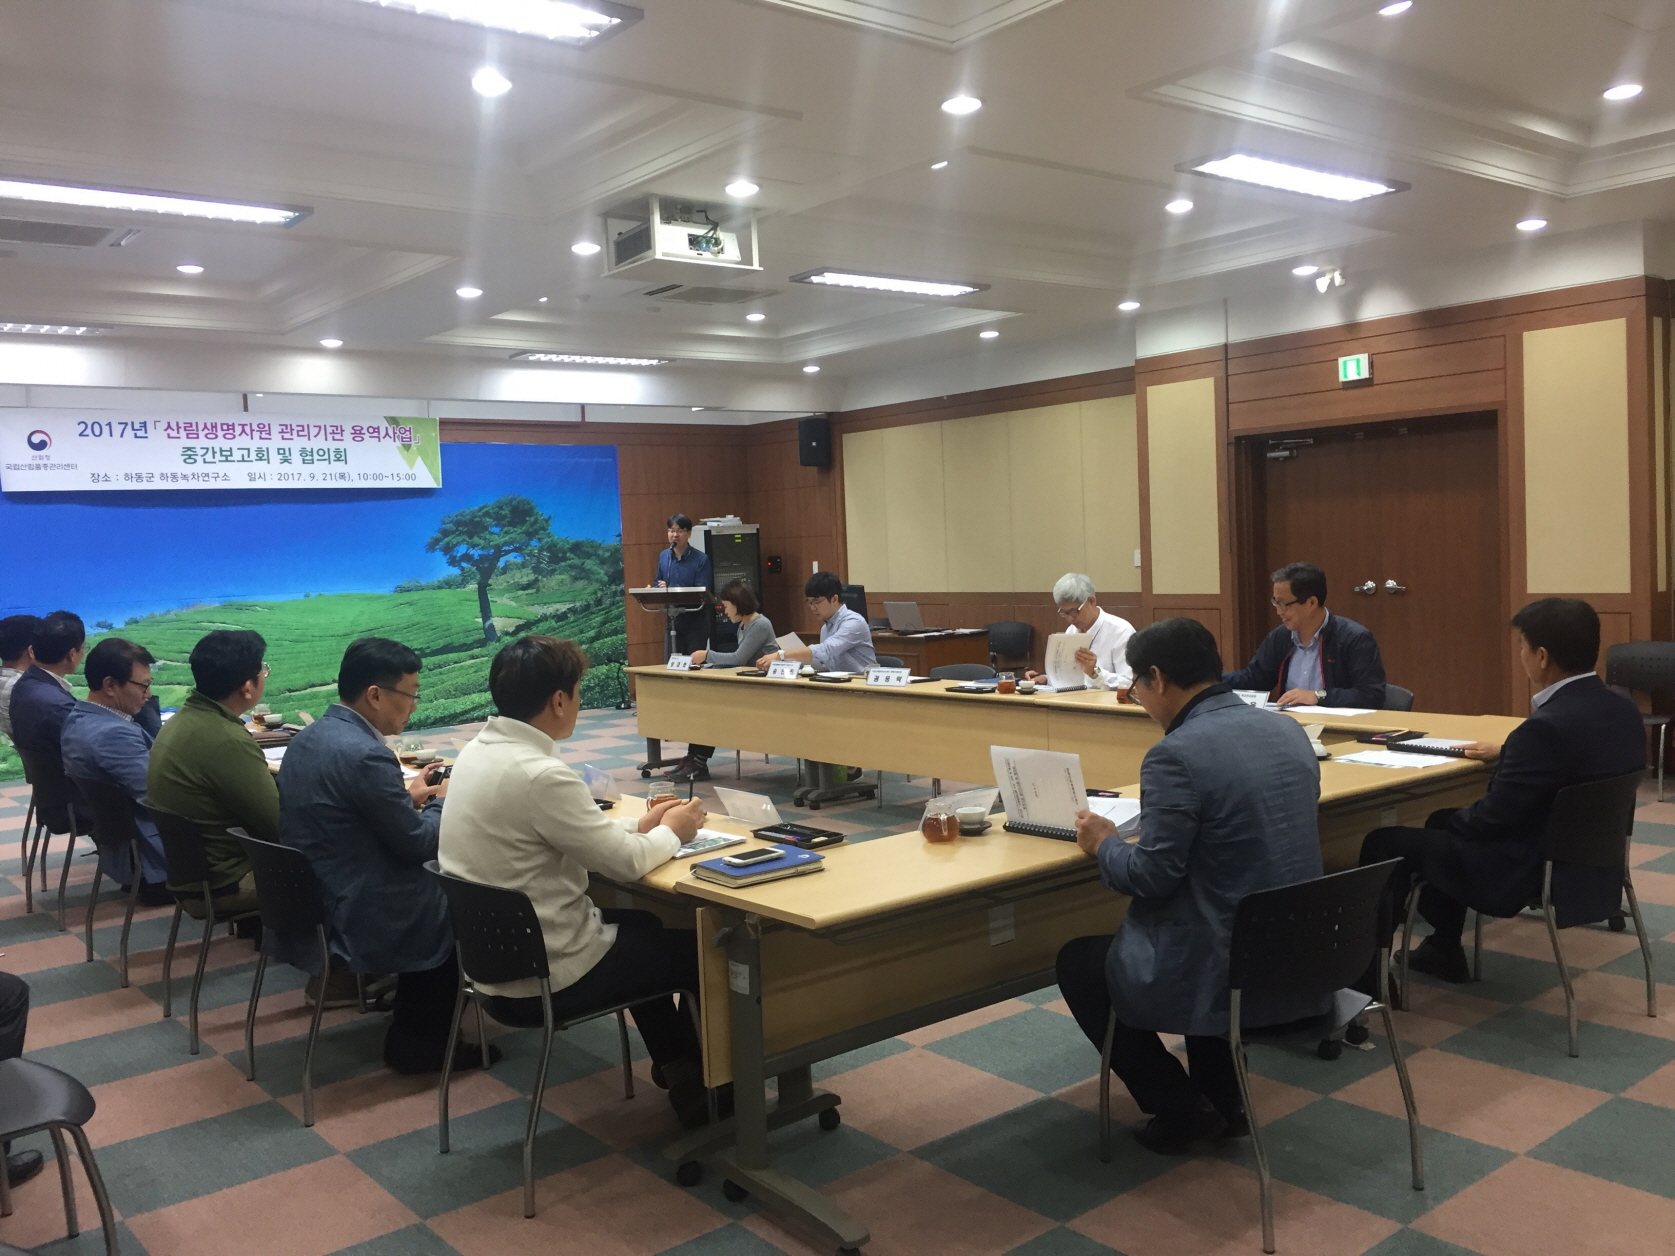 2017년 산림생명자원 관리기관 용역사업 협의회 개최 이미지1